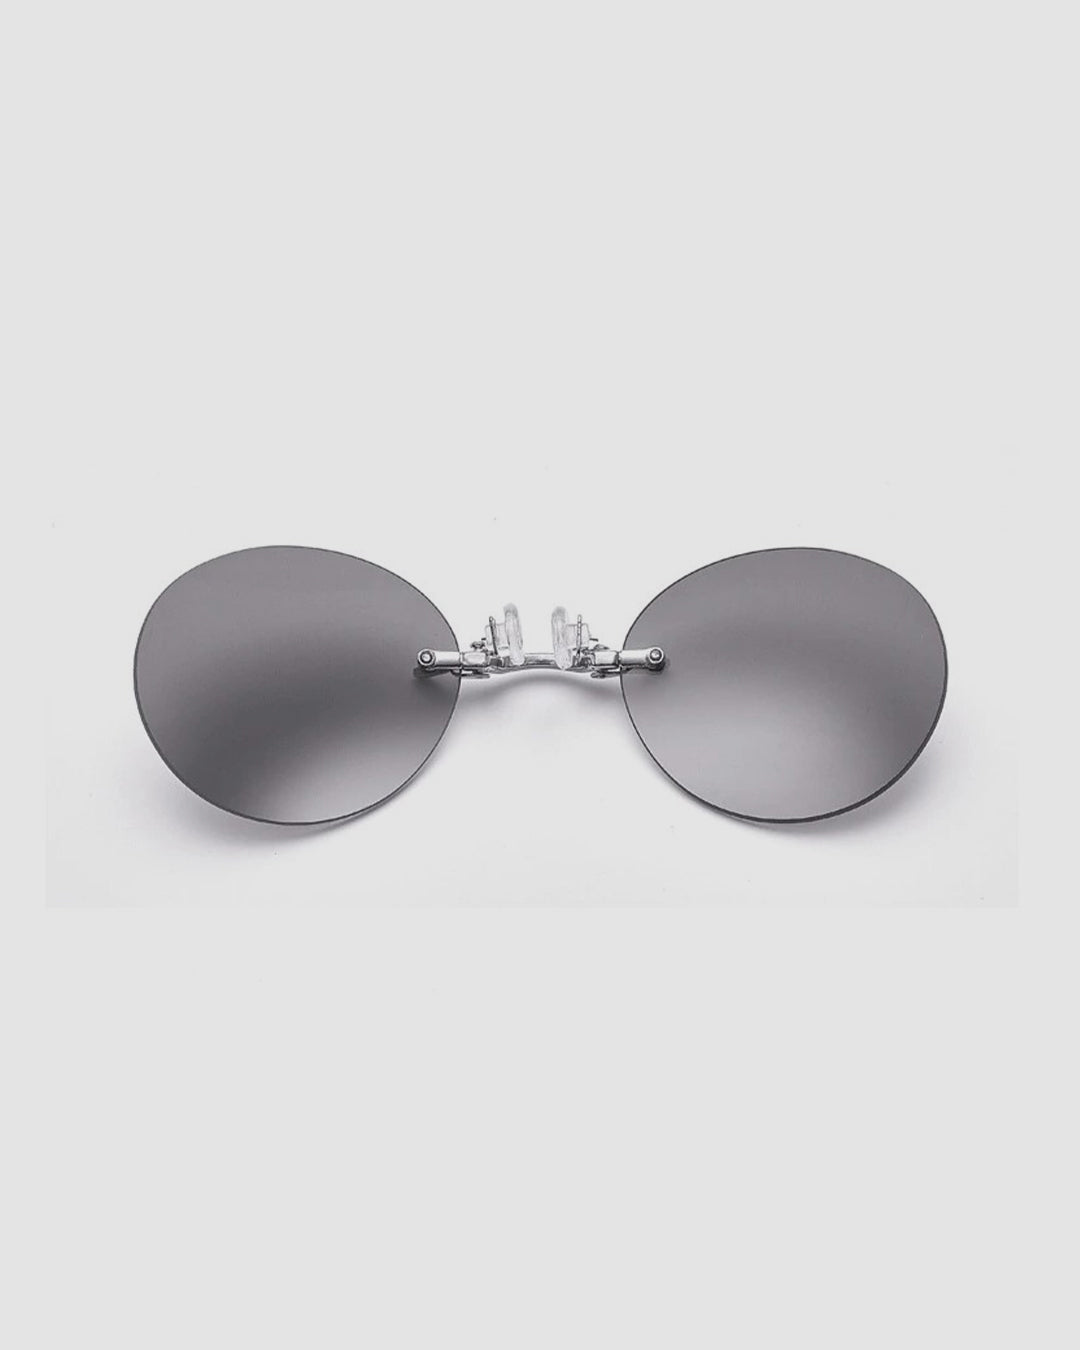 Morpheus Sunglasses